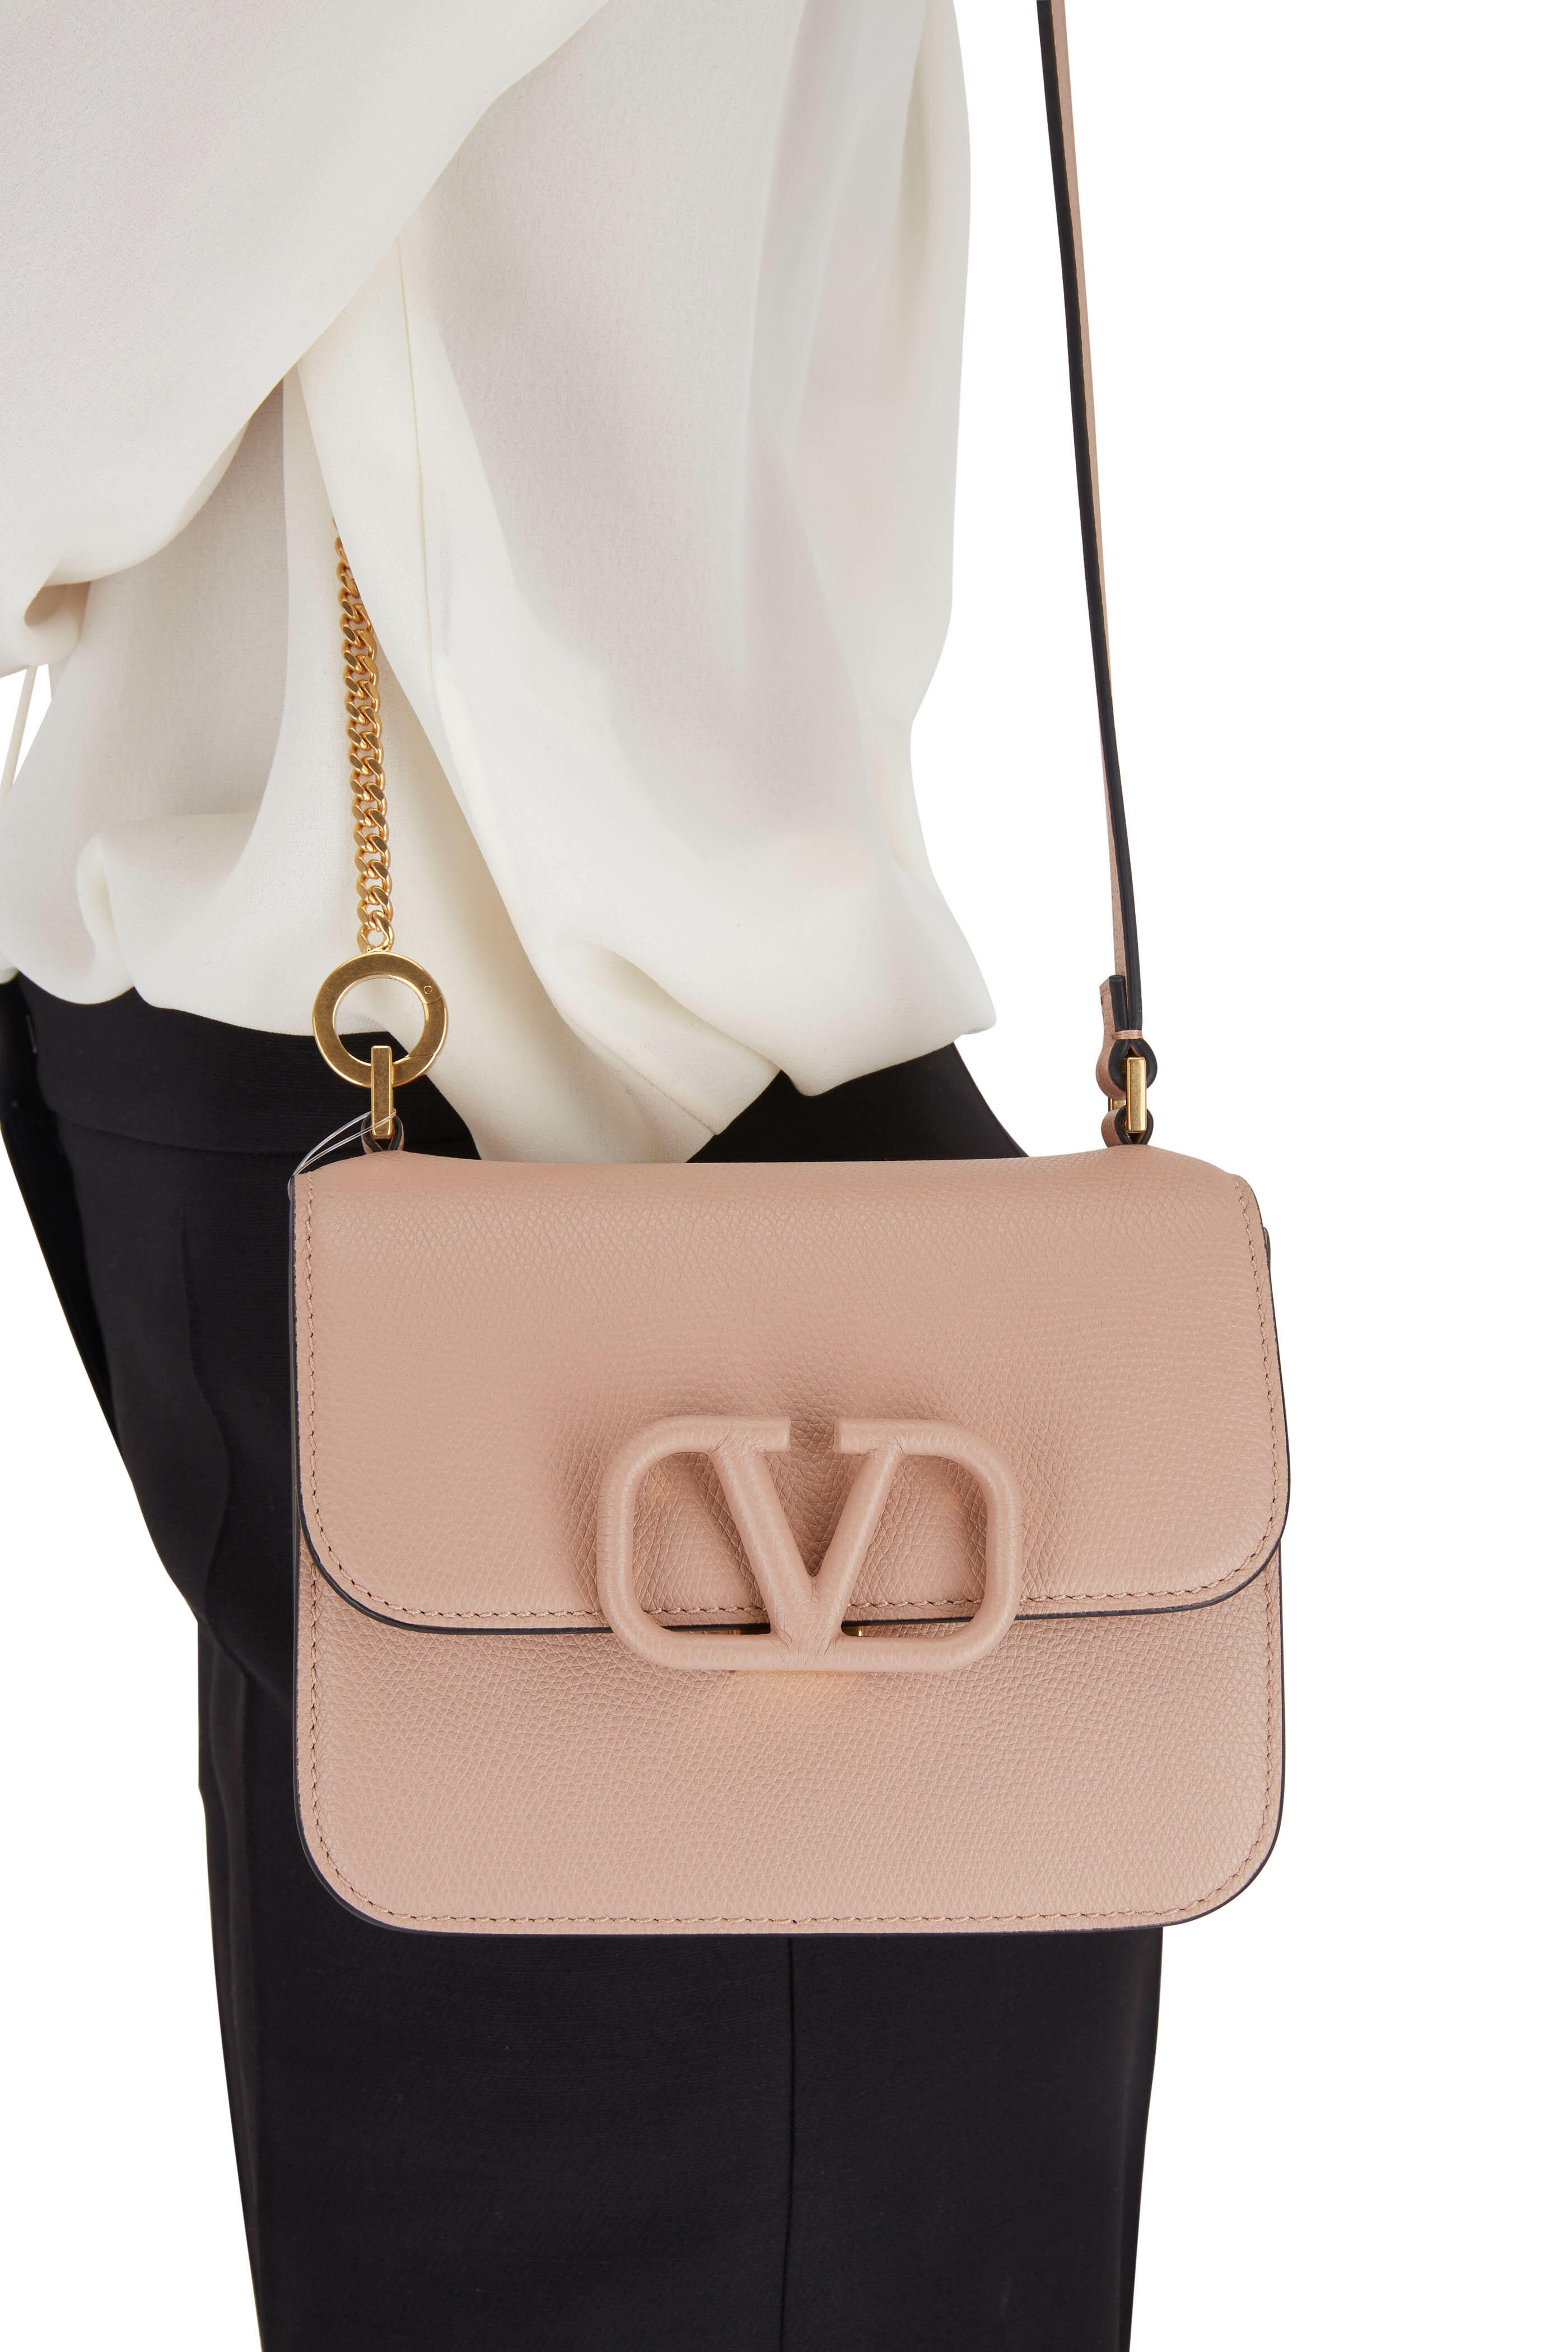 Valentino Garavani Leather Shoulder Bag on SALE